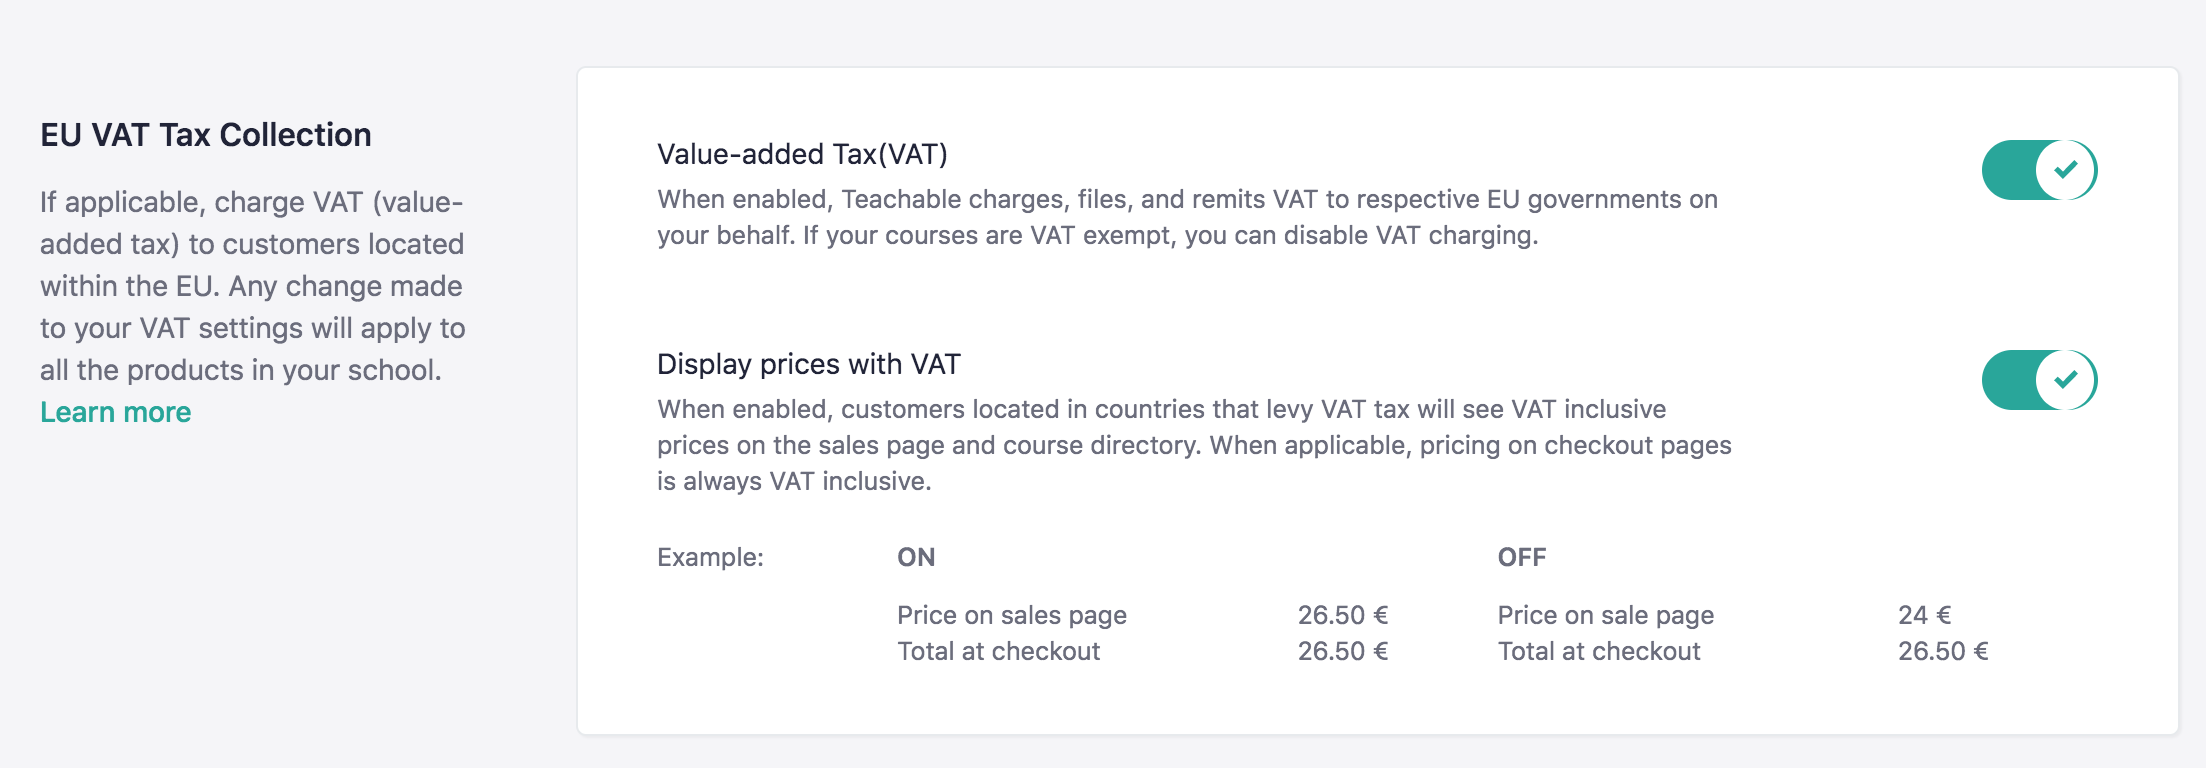 teachable EU VAT